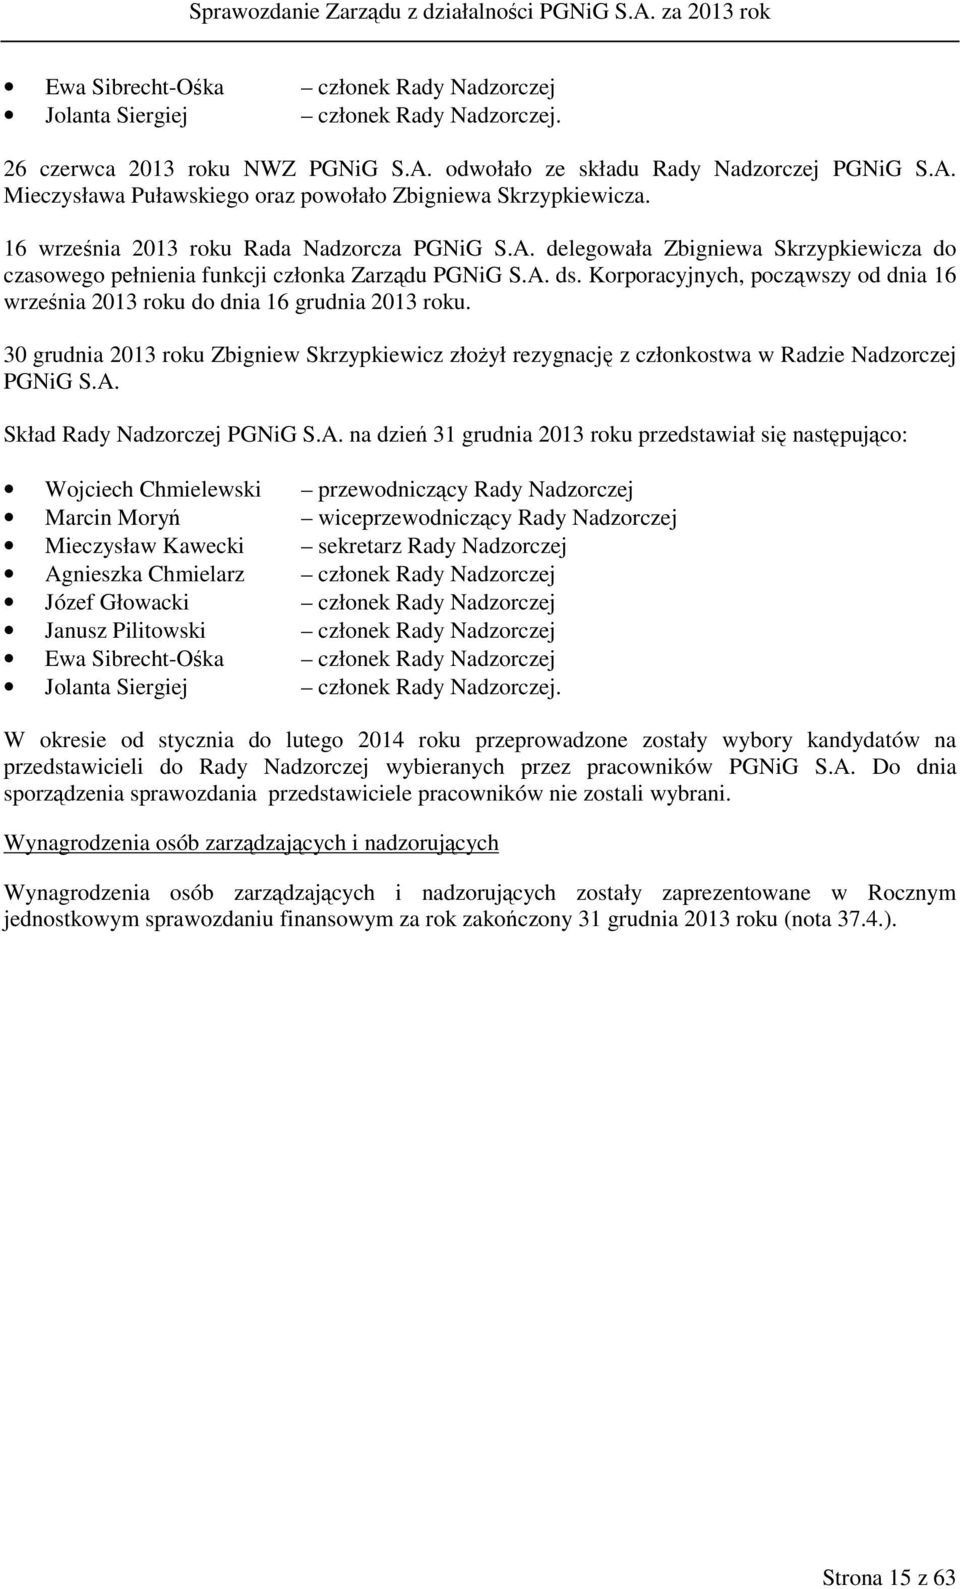 Korporacyjnych, począwszy od dnia 16 września 2013 roku do dnia 16 grudnia 2013 roku. 30 grudnia 2013 roku Zbigniew Skrzypkiewicz złożył rezygnację z członkostwa w Radzie Nadzorczej PGNiG S.A.